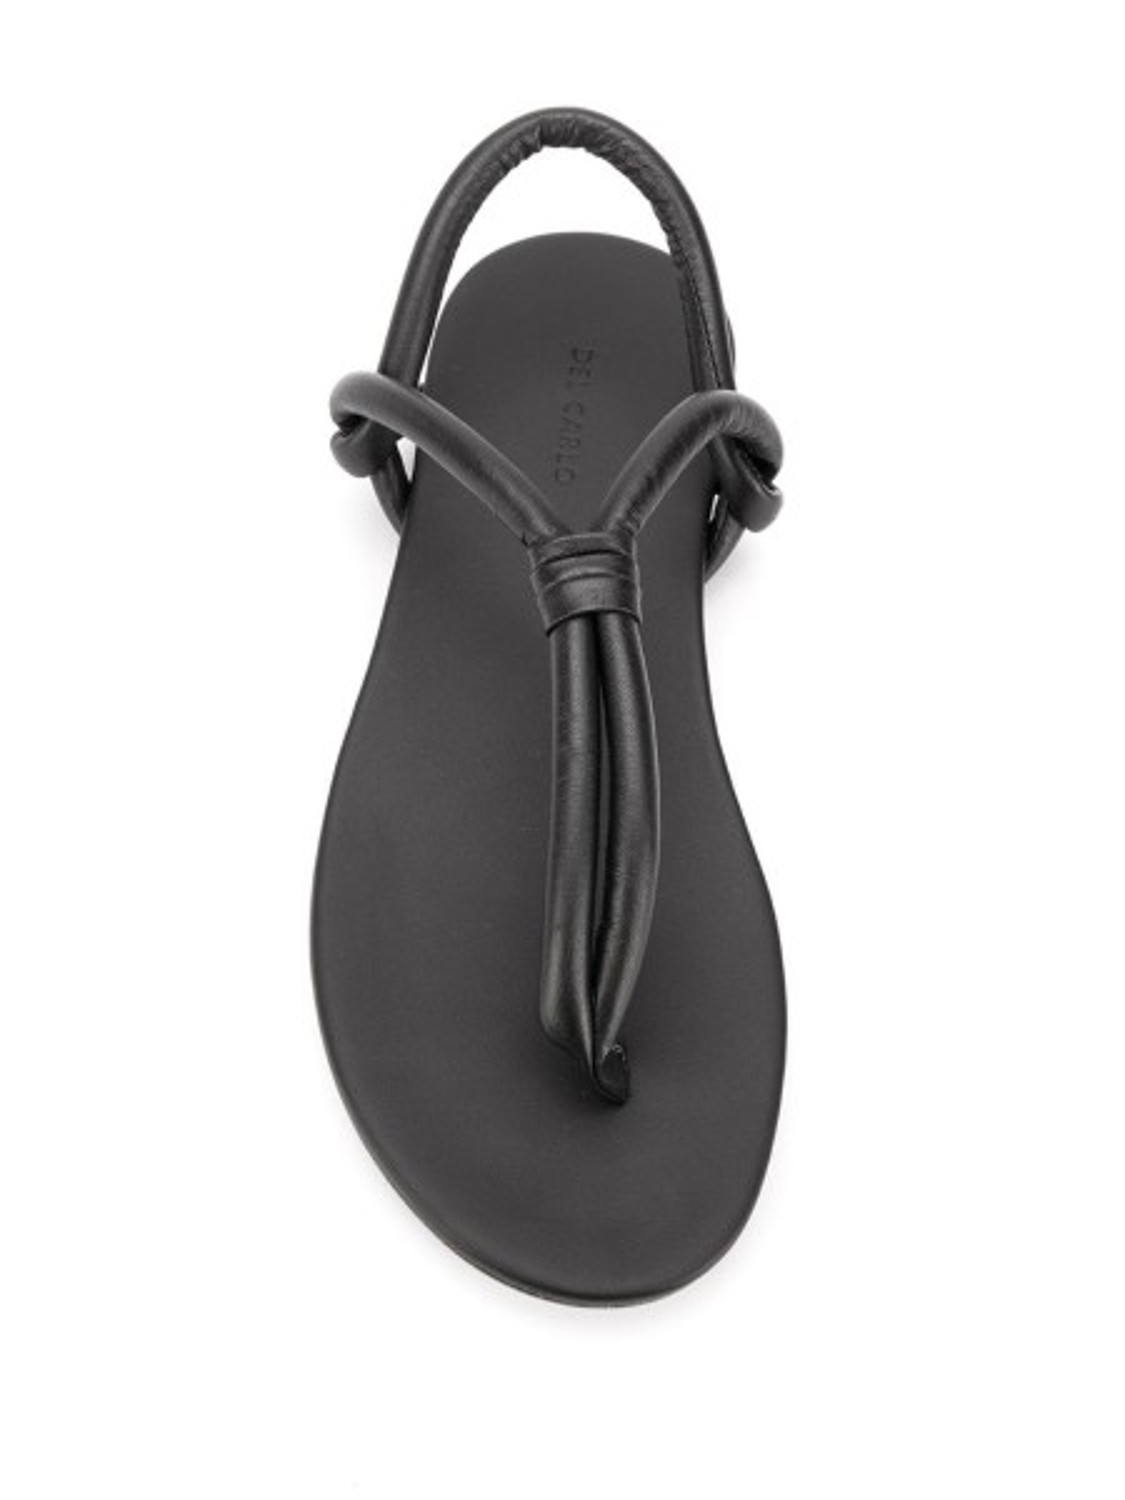 shop Del Carlo Saldi Scarpe: Scarpe Del Carlo, sandalo a infradito, in pelle nera.

Composizione: 100% pelle number 1681